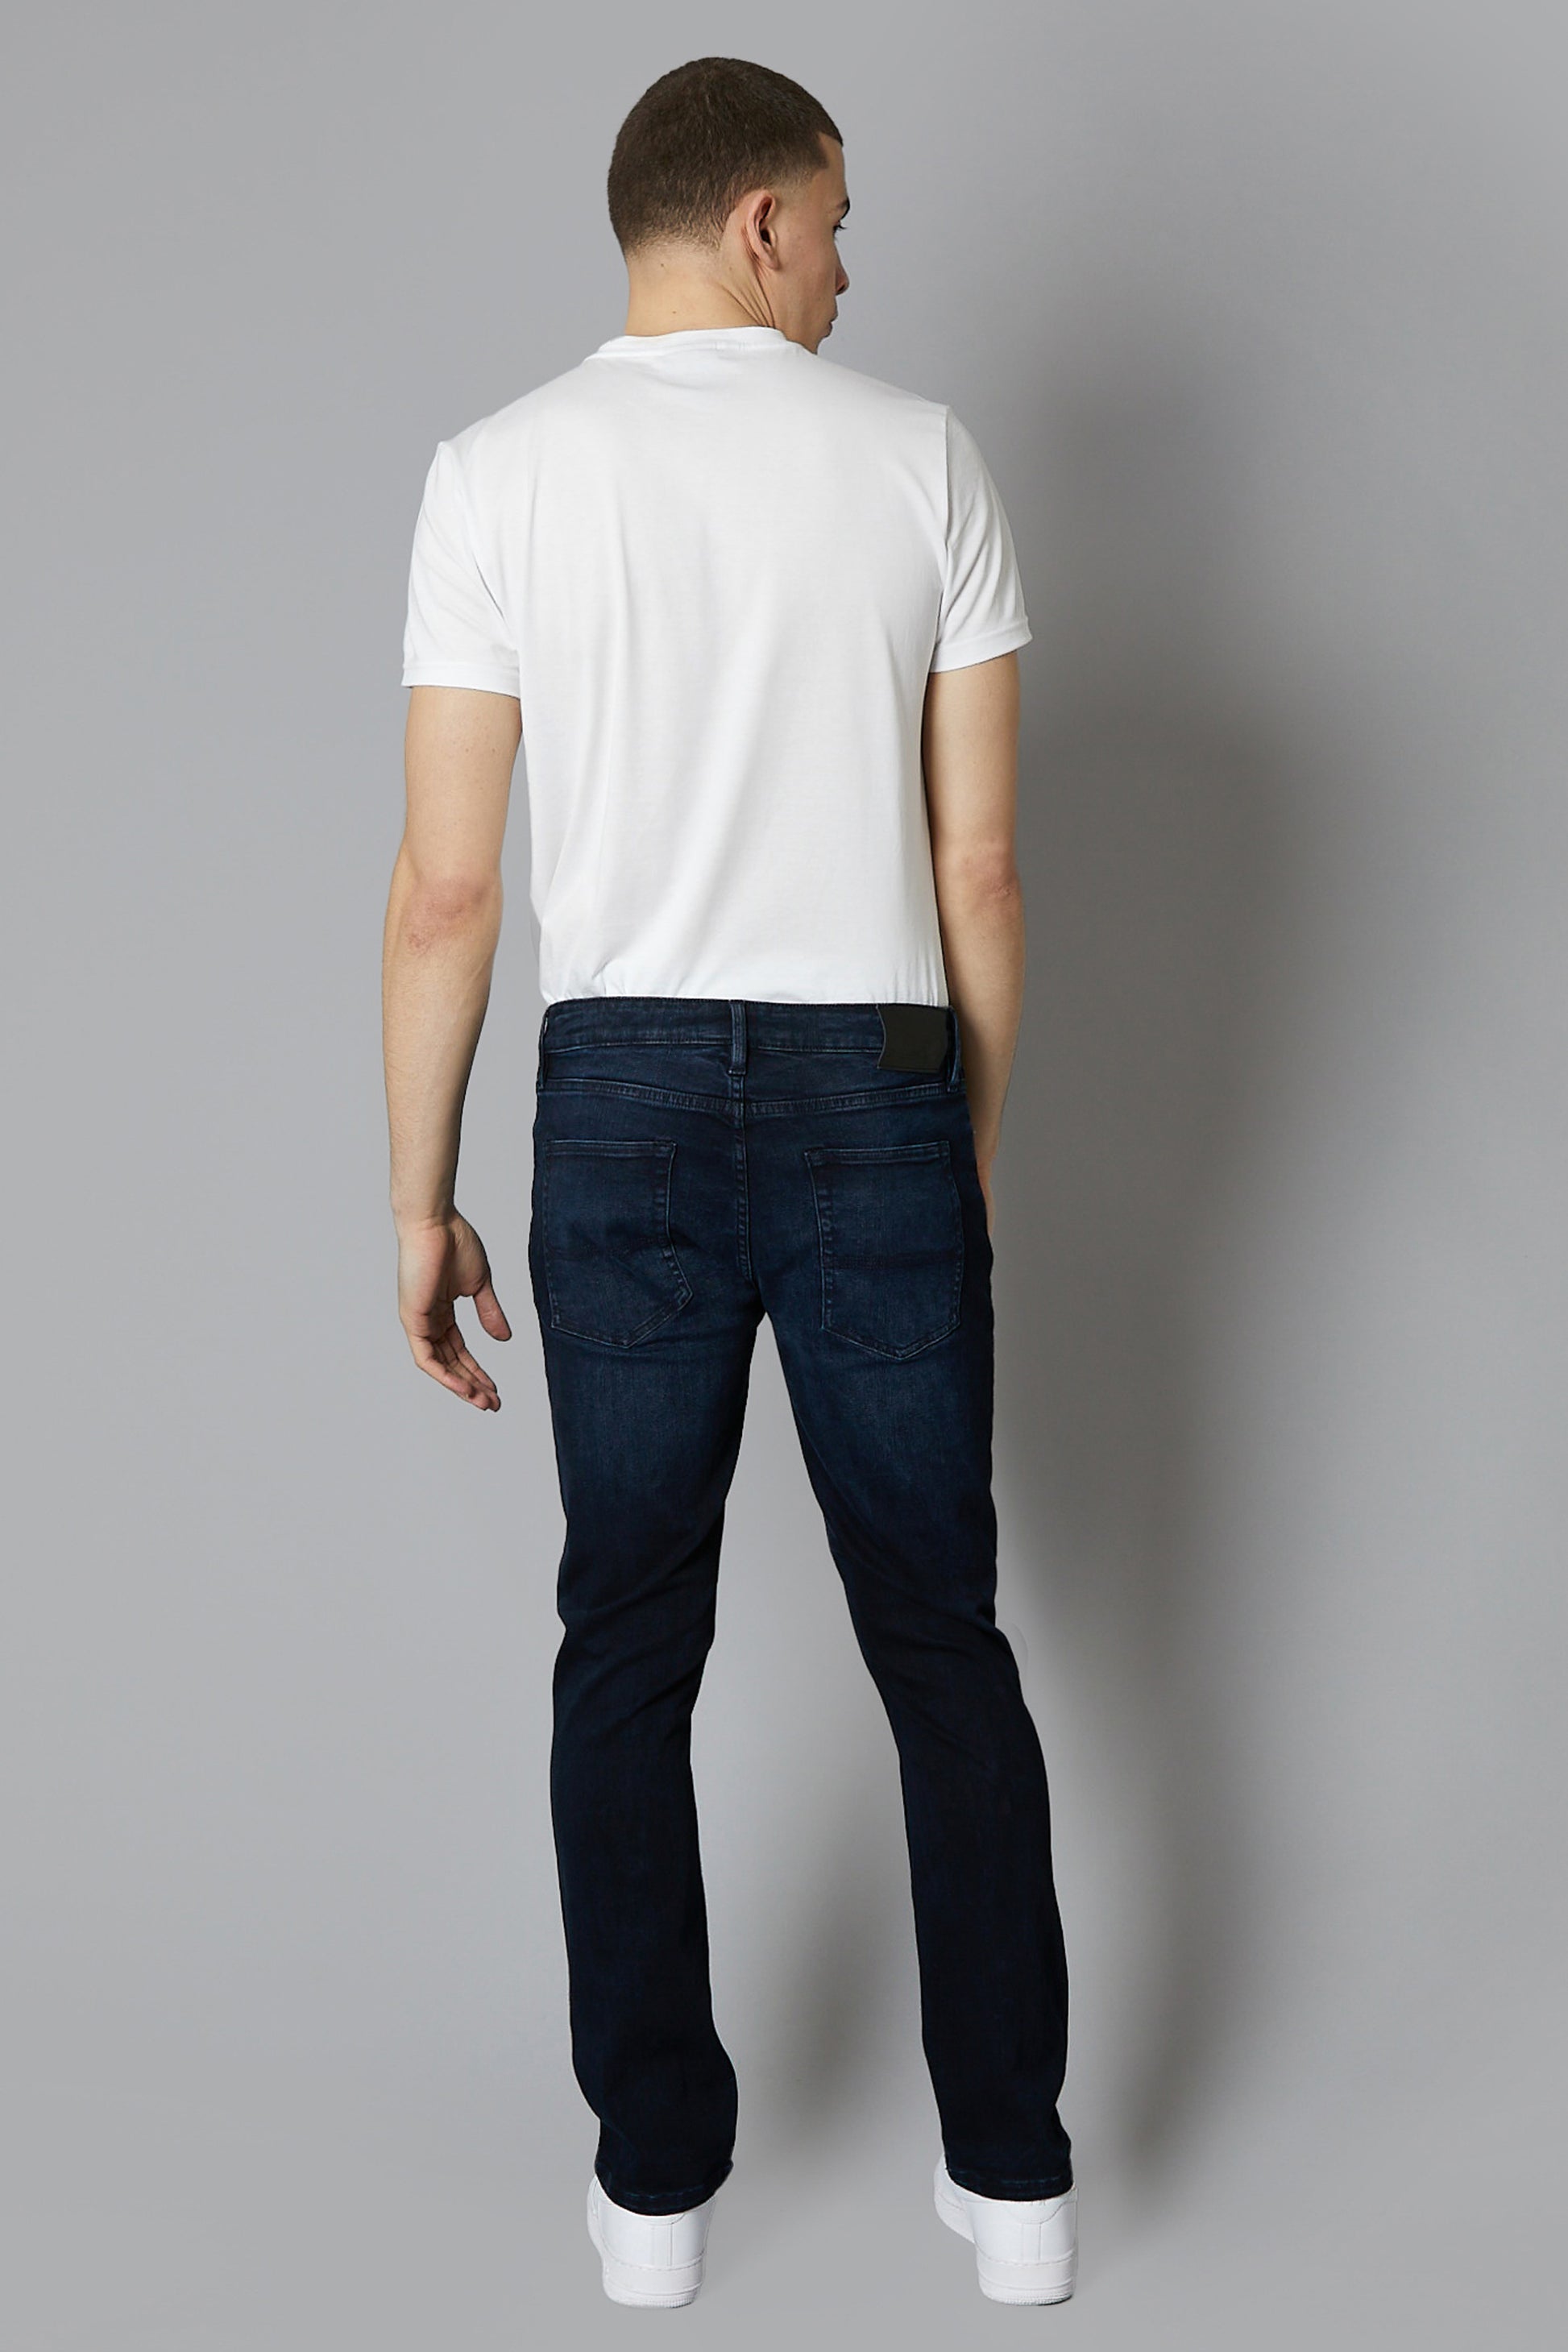 DML Jeans Alaska mens Ink Blue straight leg denim jeans back view full length